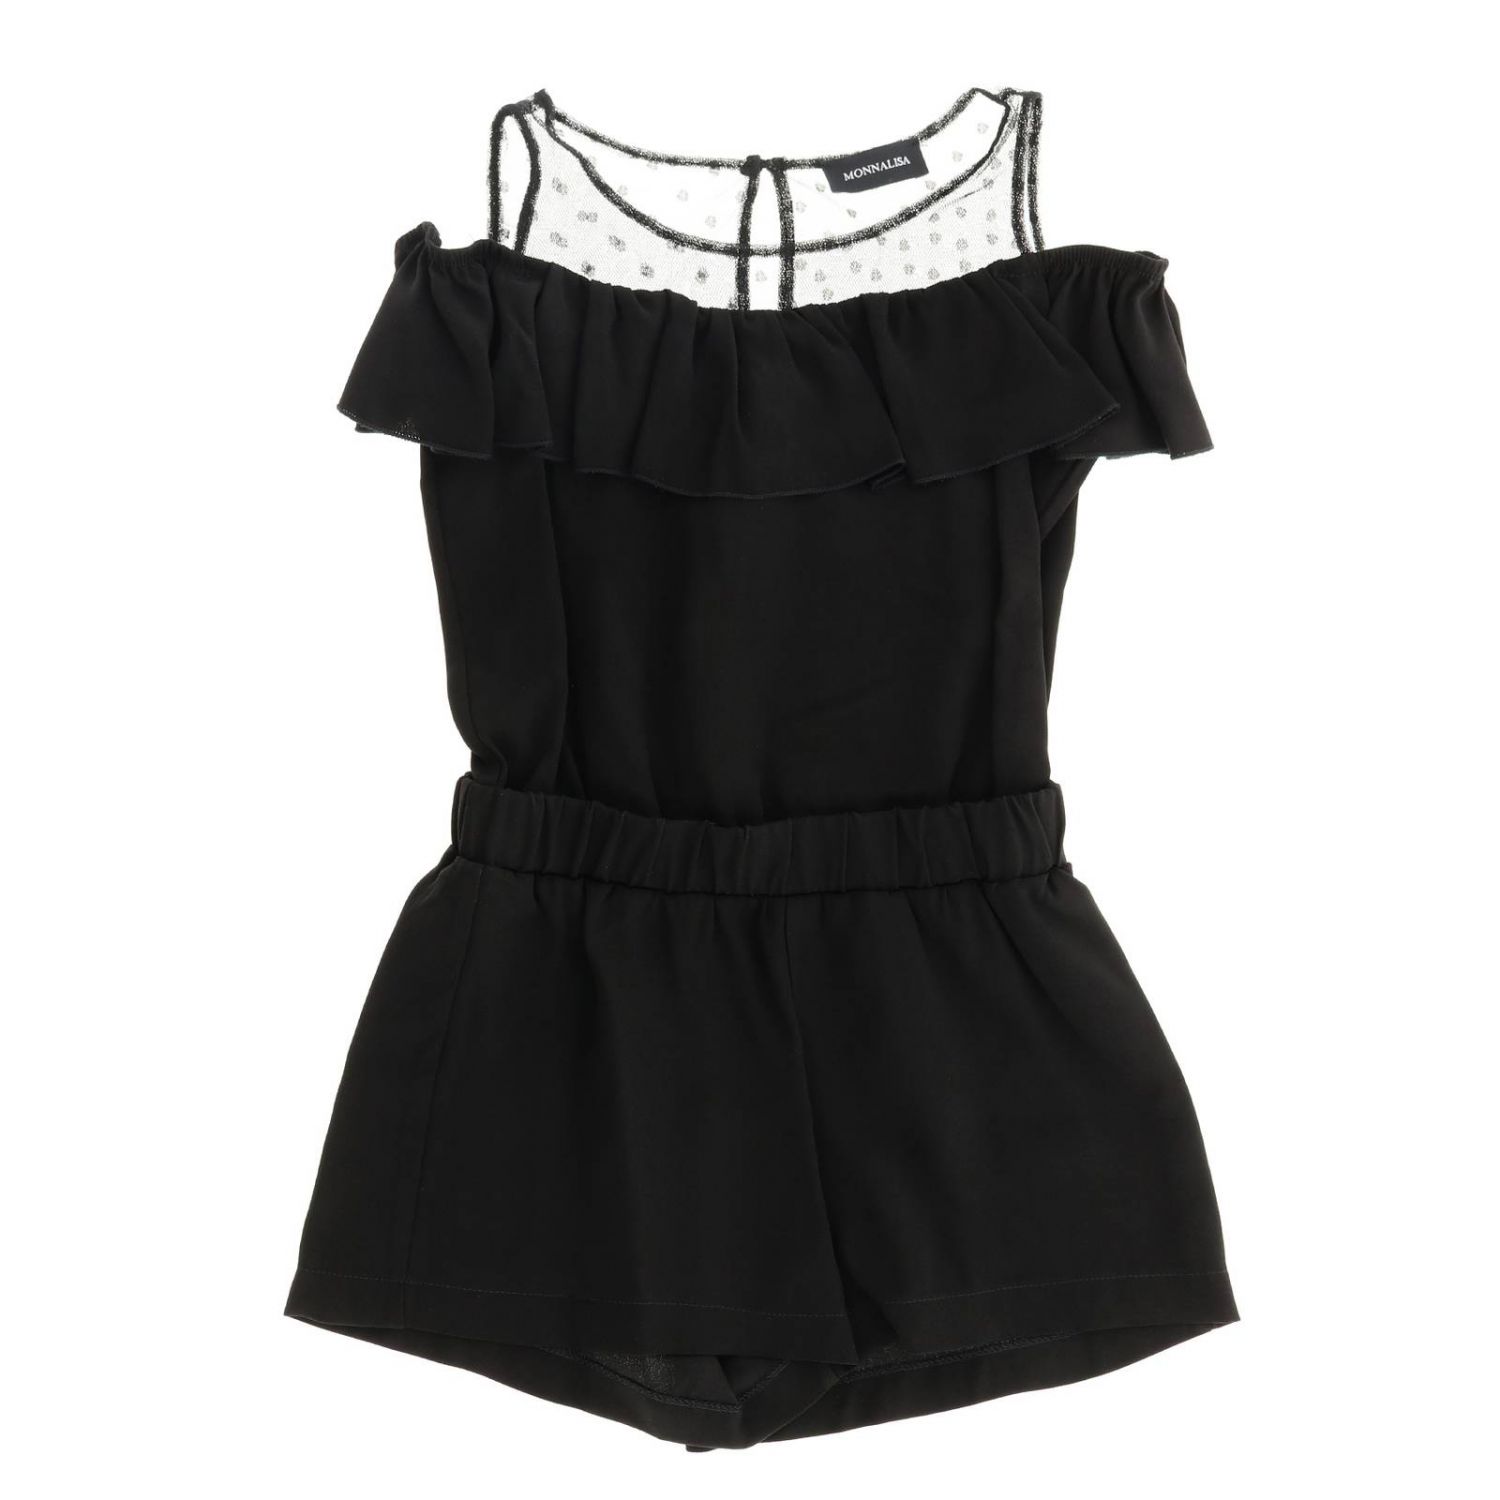 Monnalisa Outlet: Dress kids - Black | Dress Monnalisa 413201 3127 ...